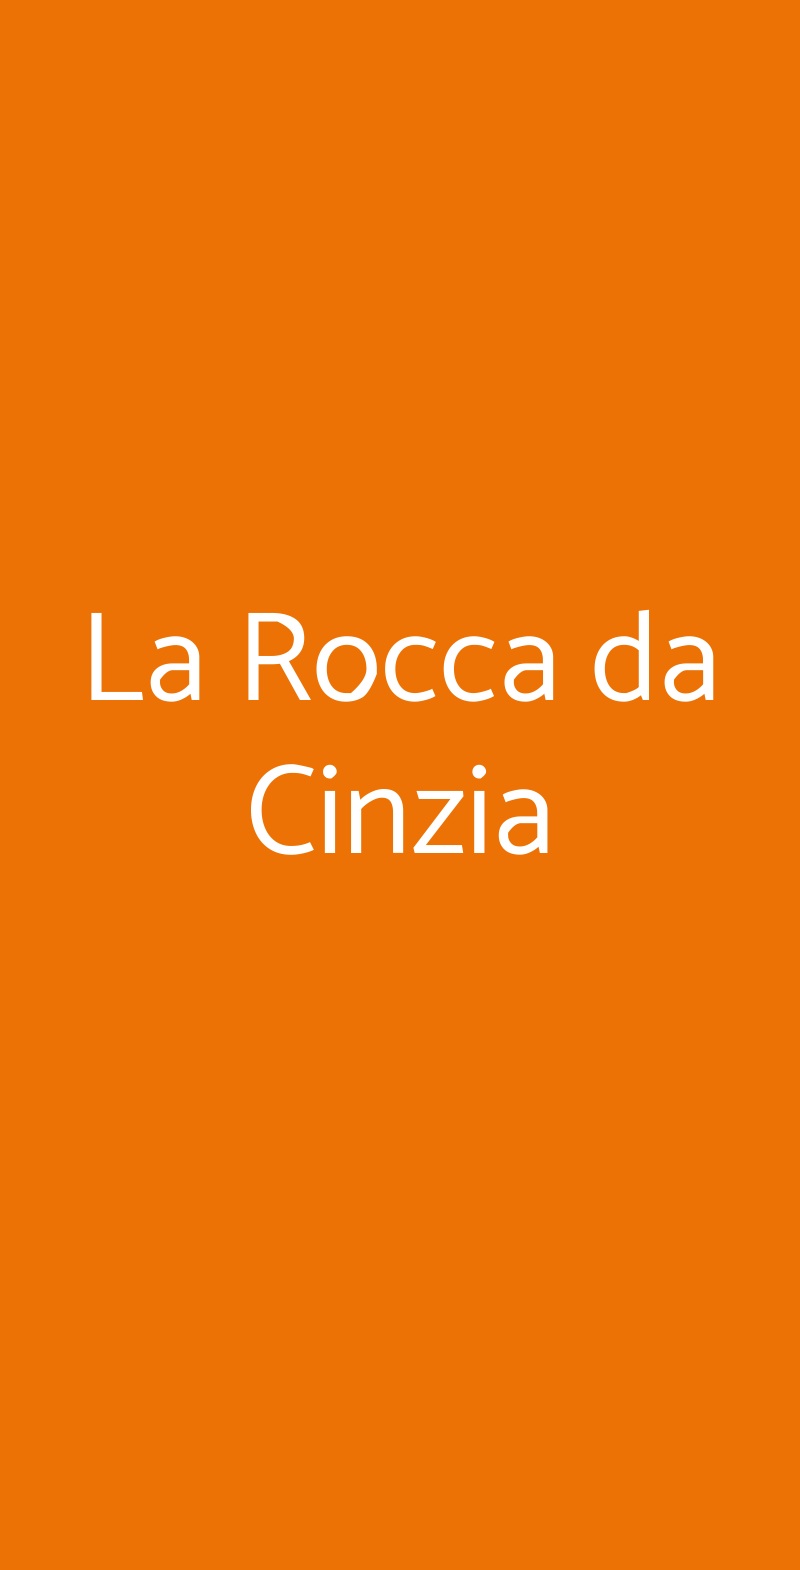 La Rocca da Cinzia Fossombrone menù 1 pagina